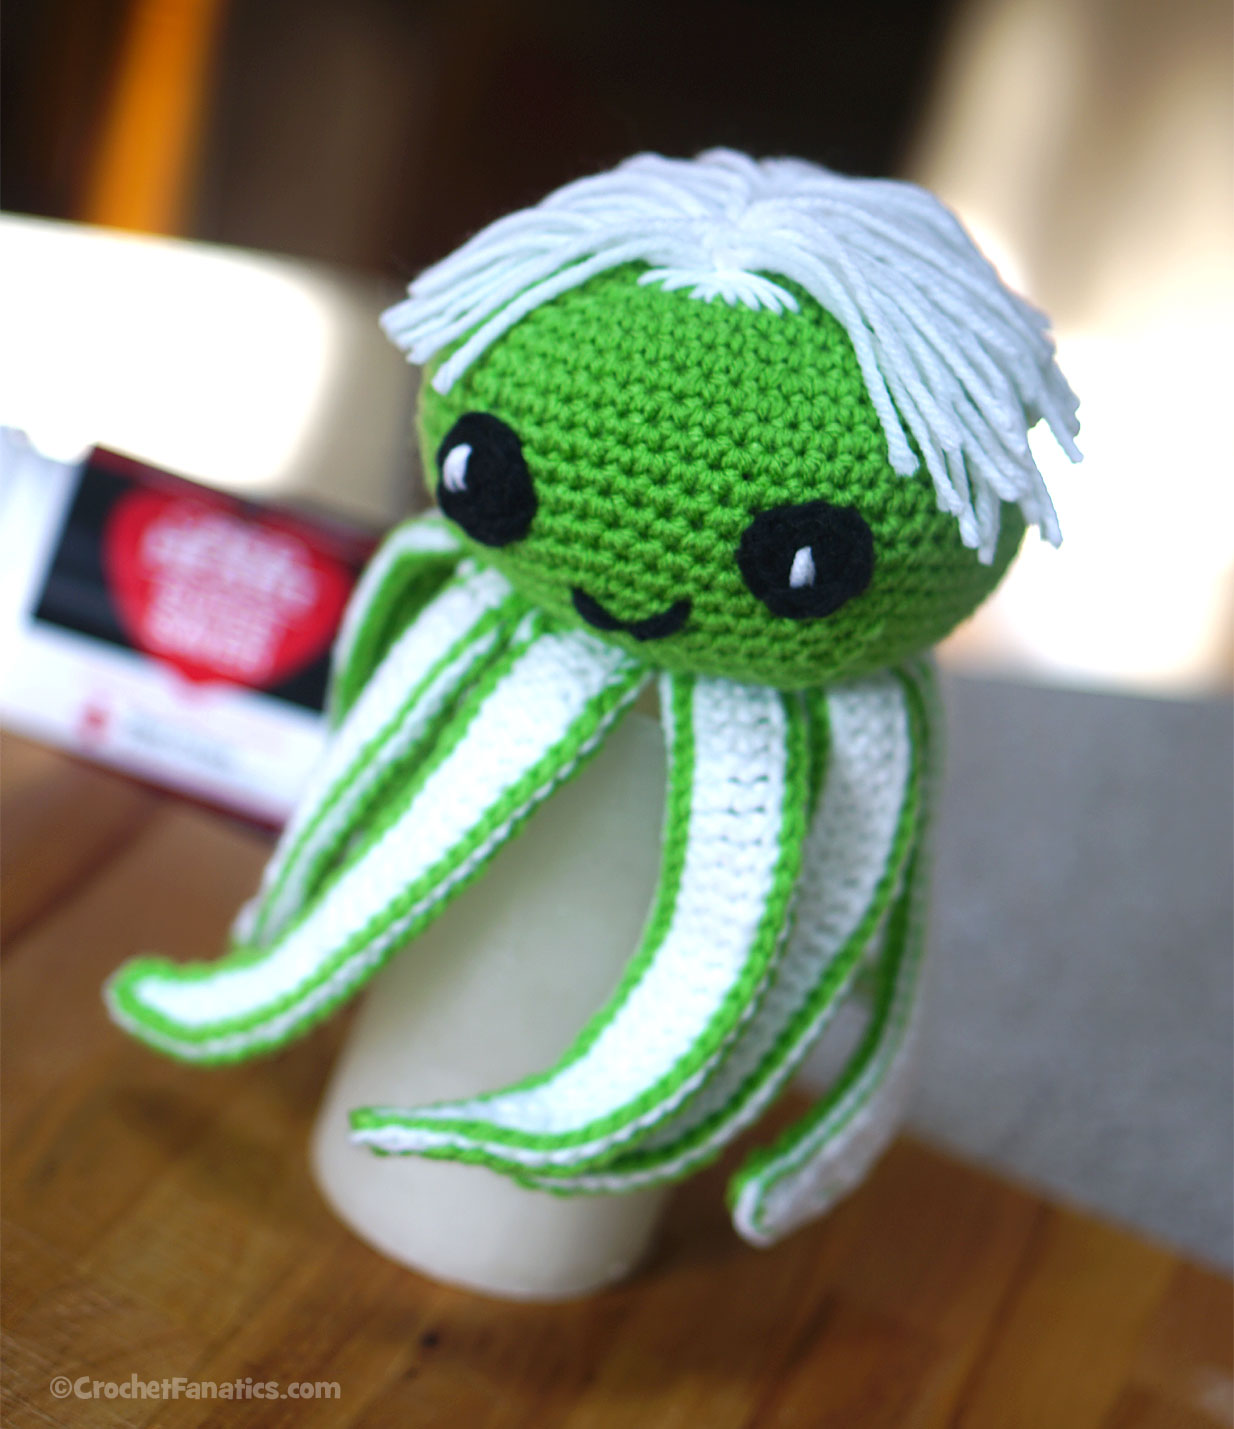 Amigurumi Ollie the Octopus Crochet Pattern